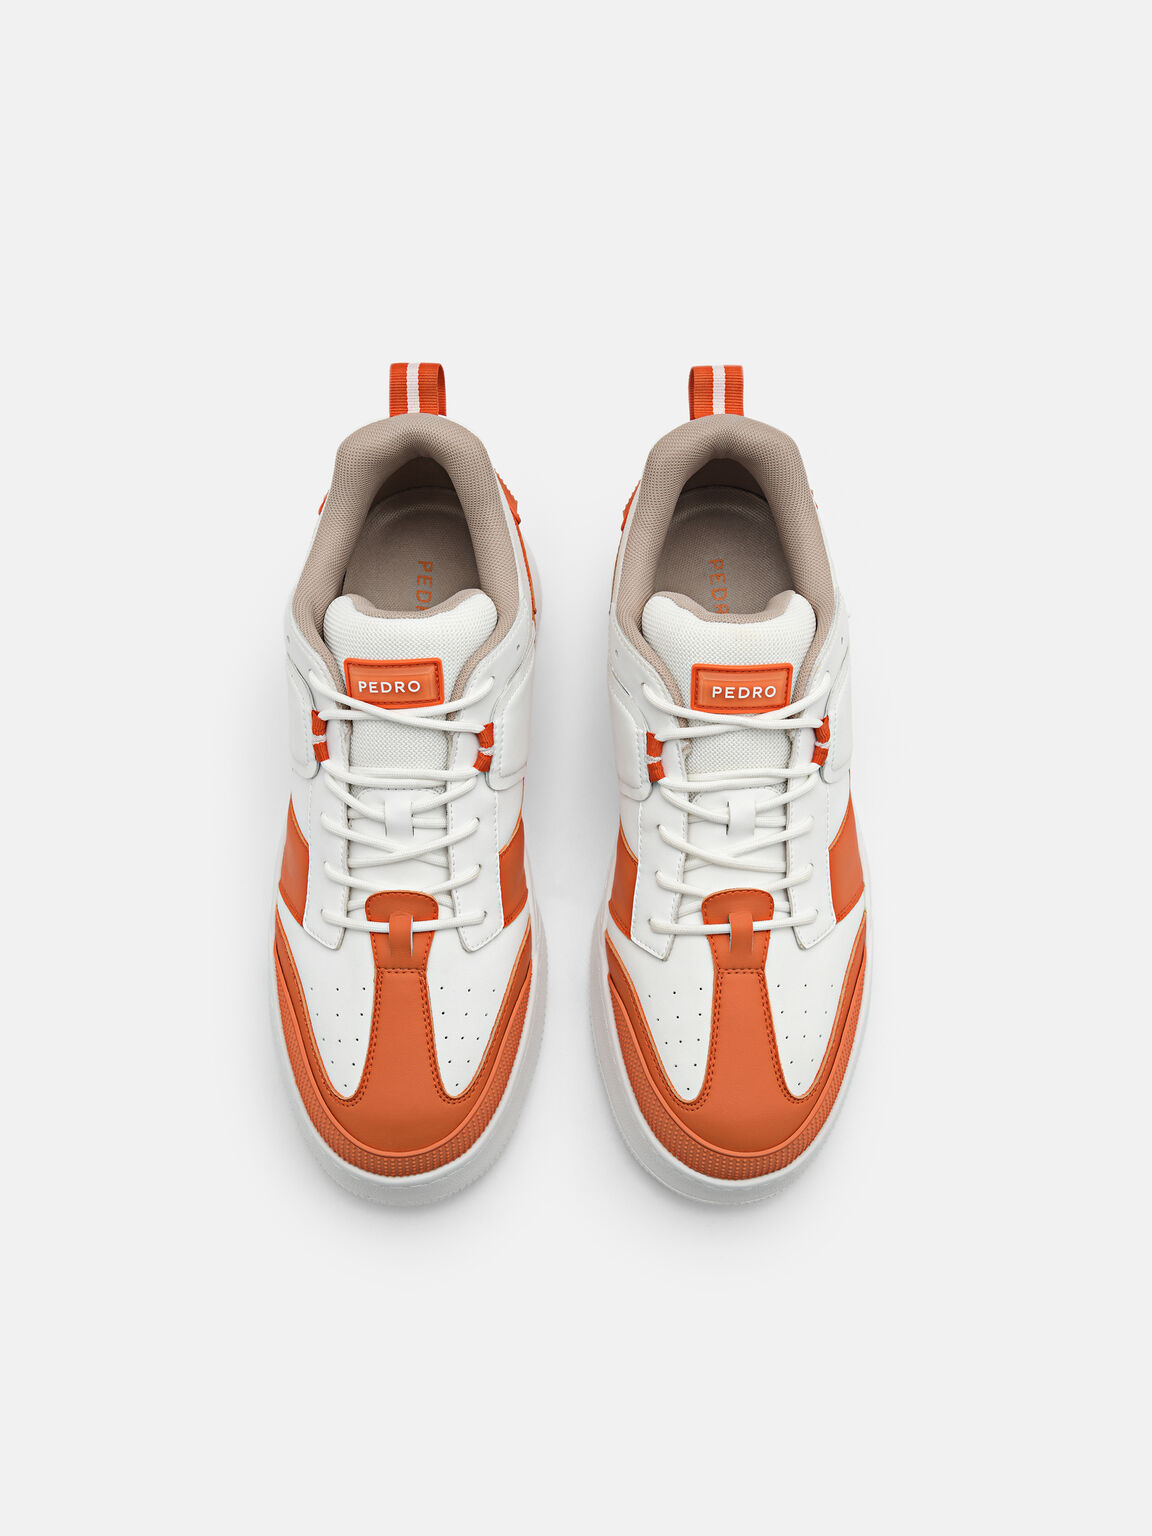 Arc Court Sneakers, Orange, hi-res